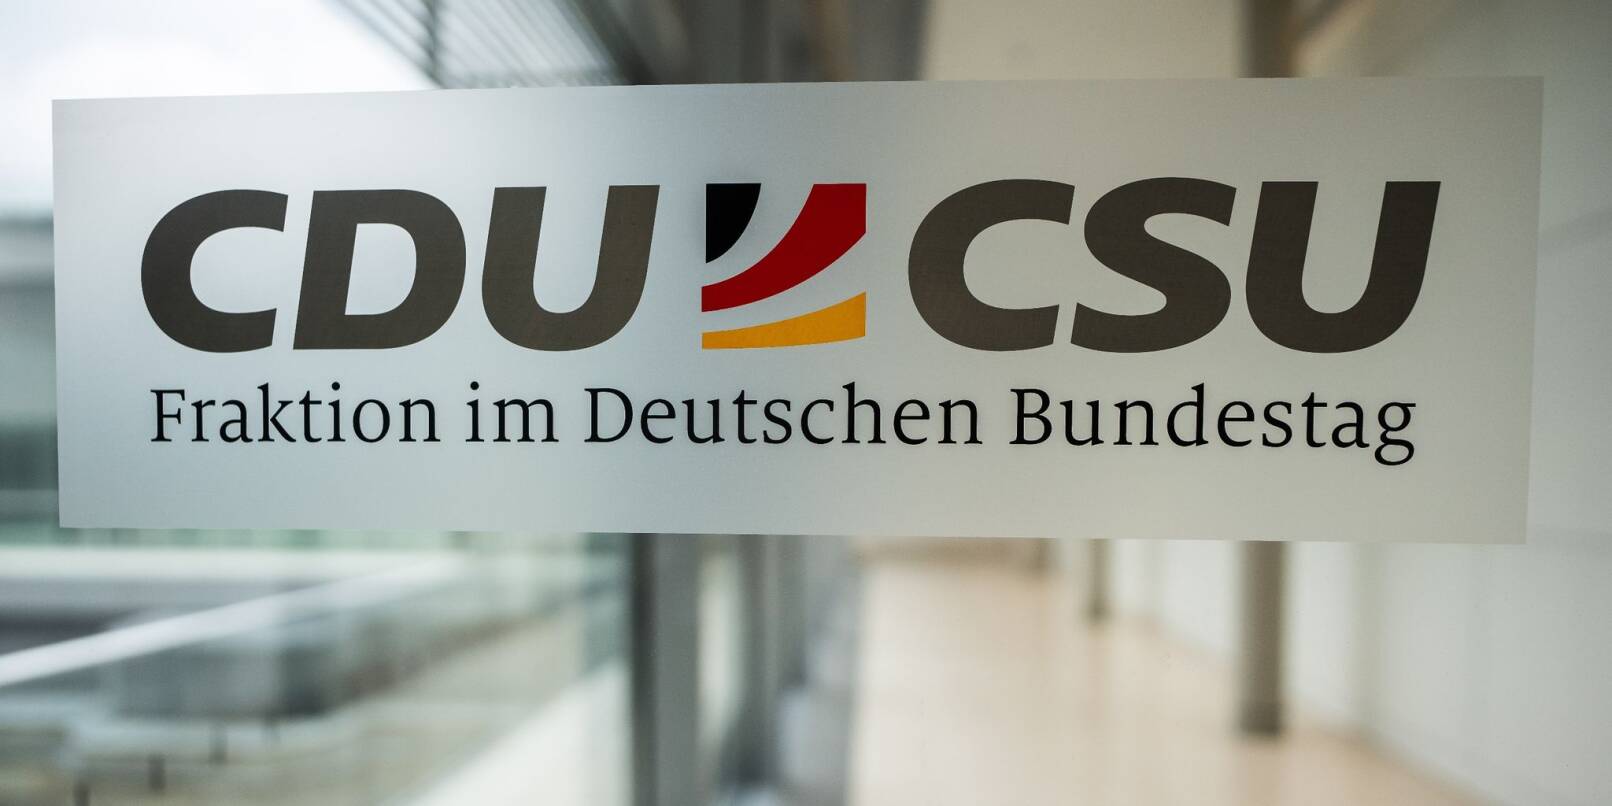 Das Logo der CDU/CSU-Fraktion im Deutschen Bundestag.